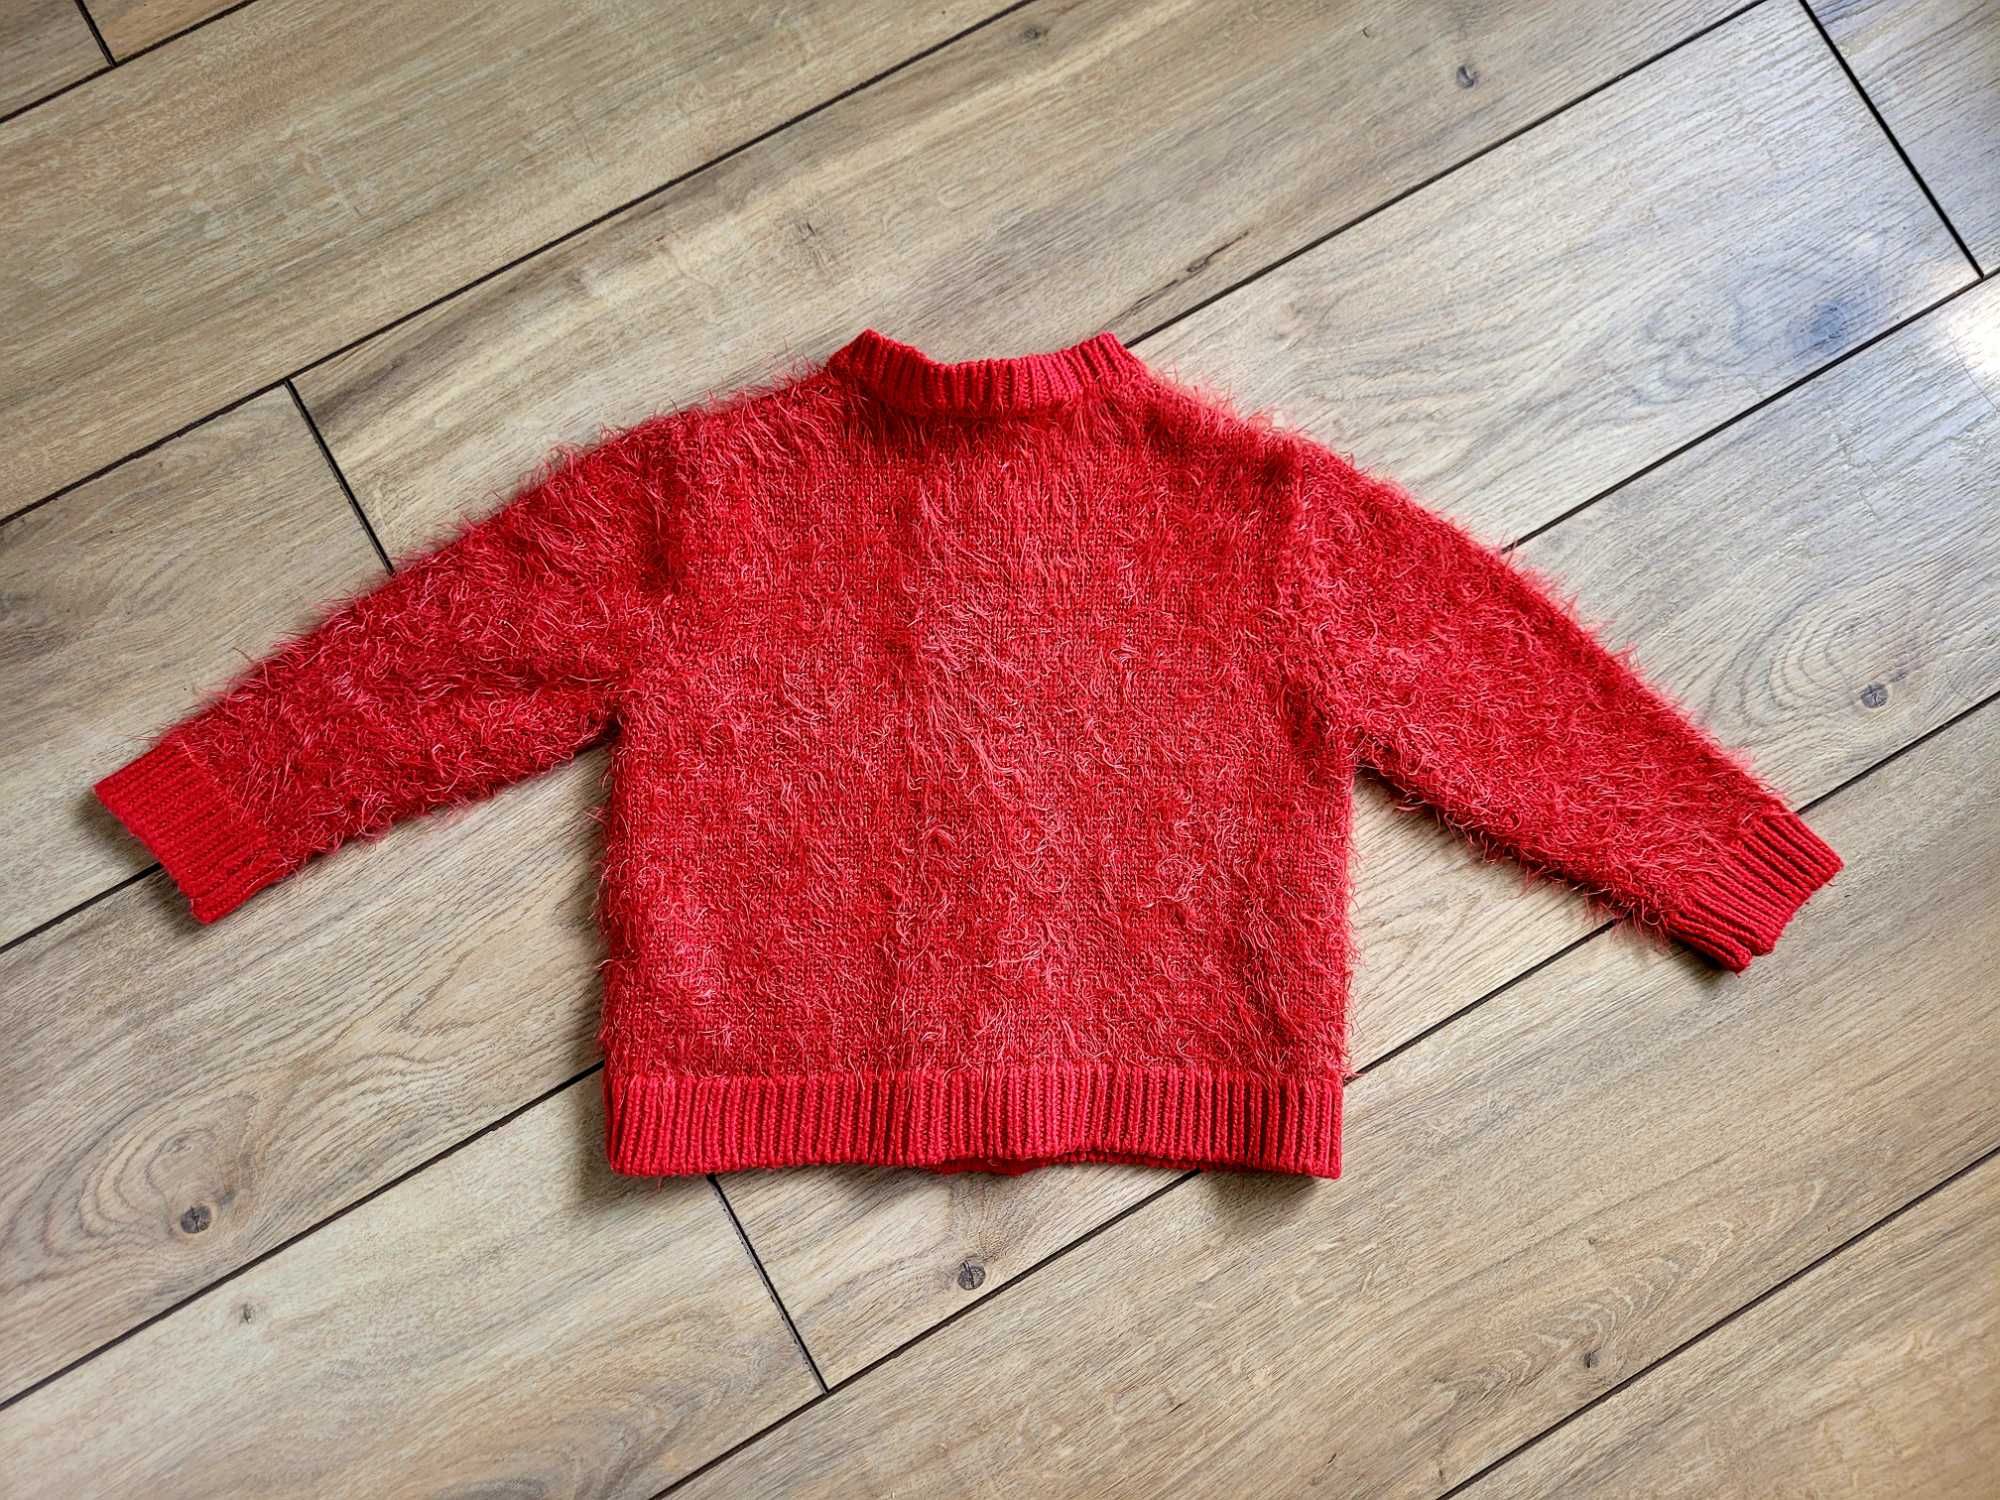 Rozpinany sweter 51015 niemowlęcy 86/92 18-24 Minoti włochaty